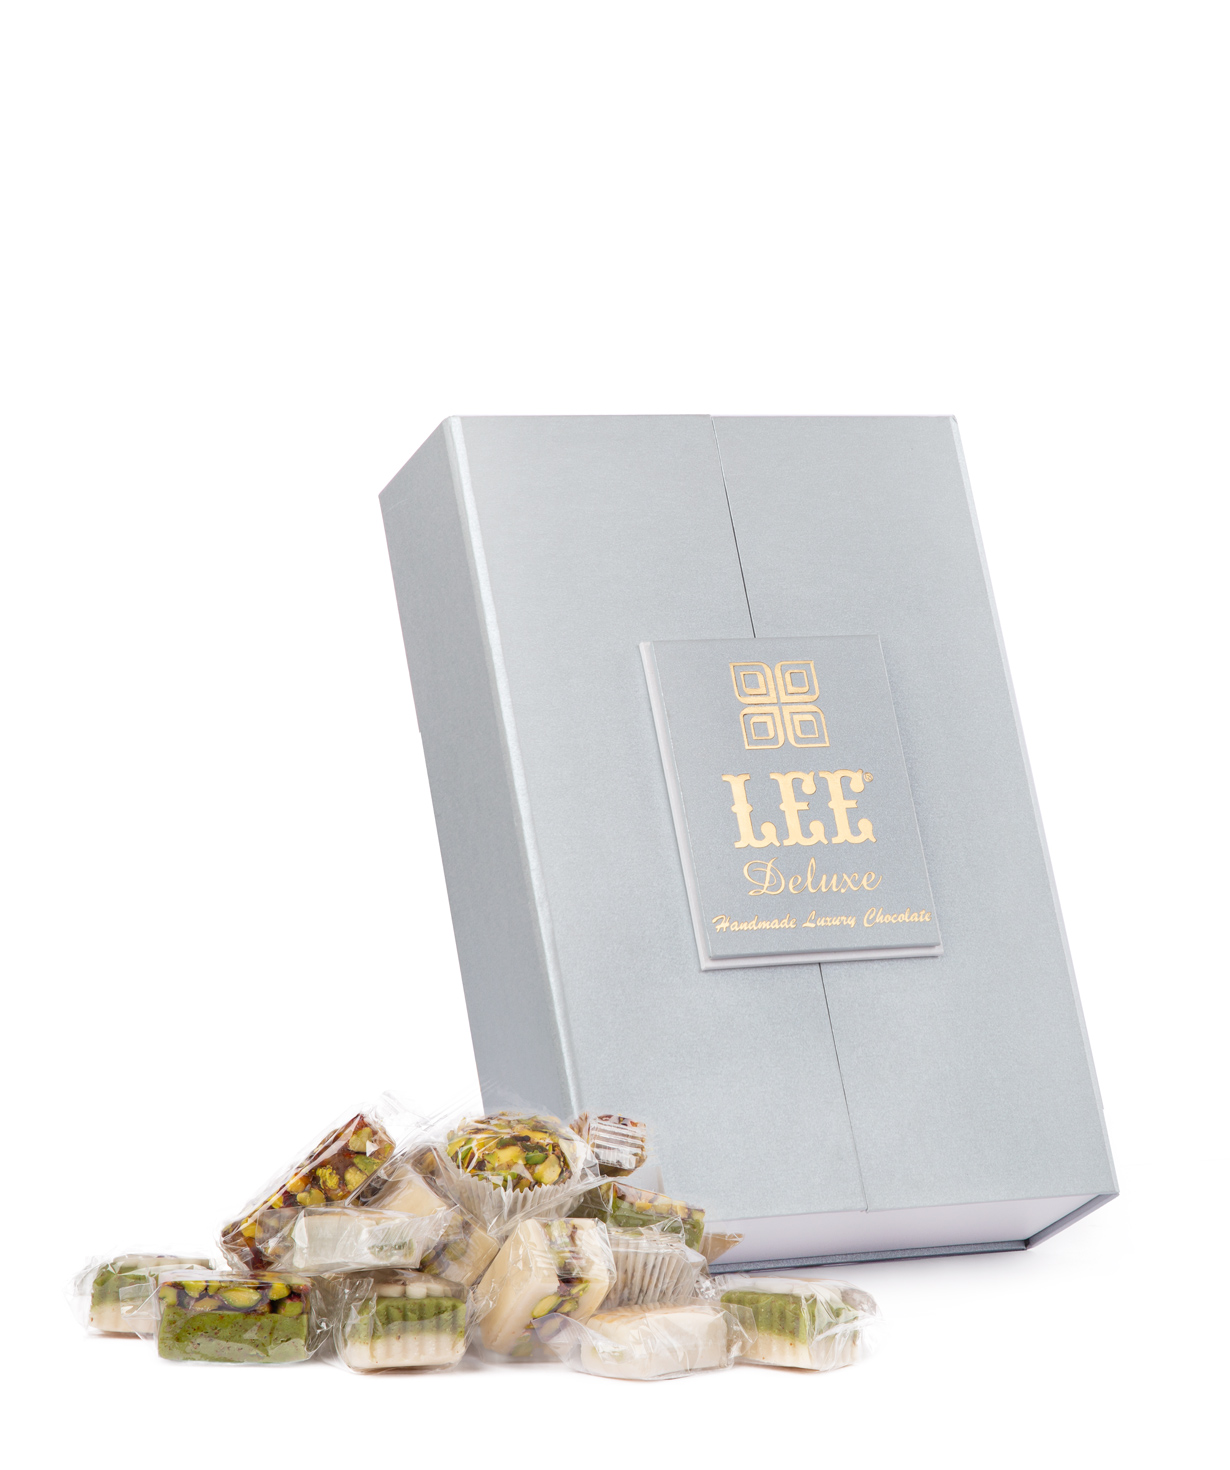 Հավաքածու «Lee Deluxe» արևելյան քաղցրավենիքների